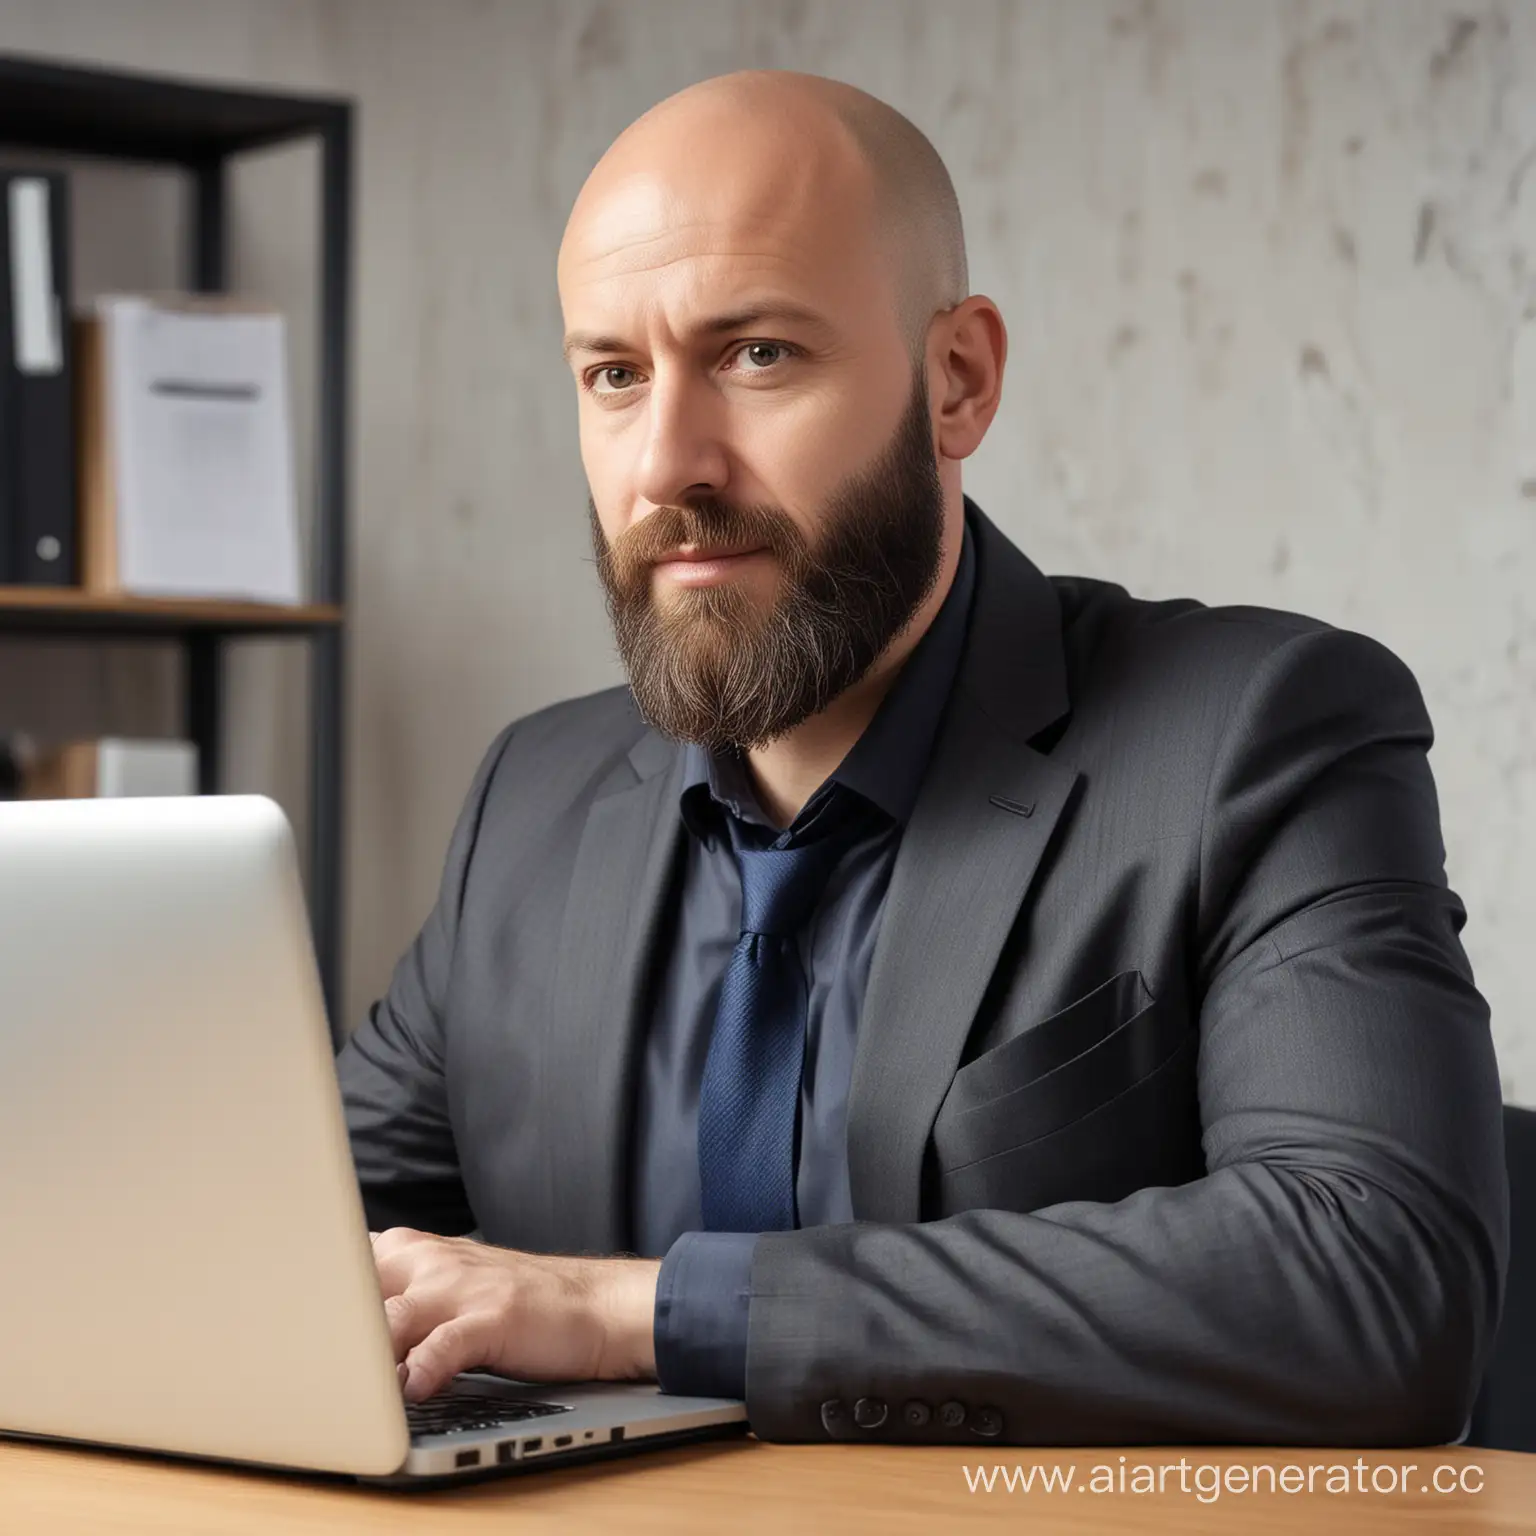 лысый мужчина с бородой 45 лет в офисе за ноутбуком реалистичное фото